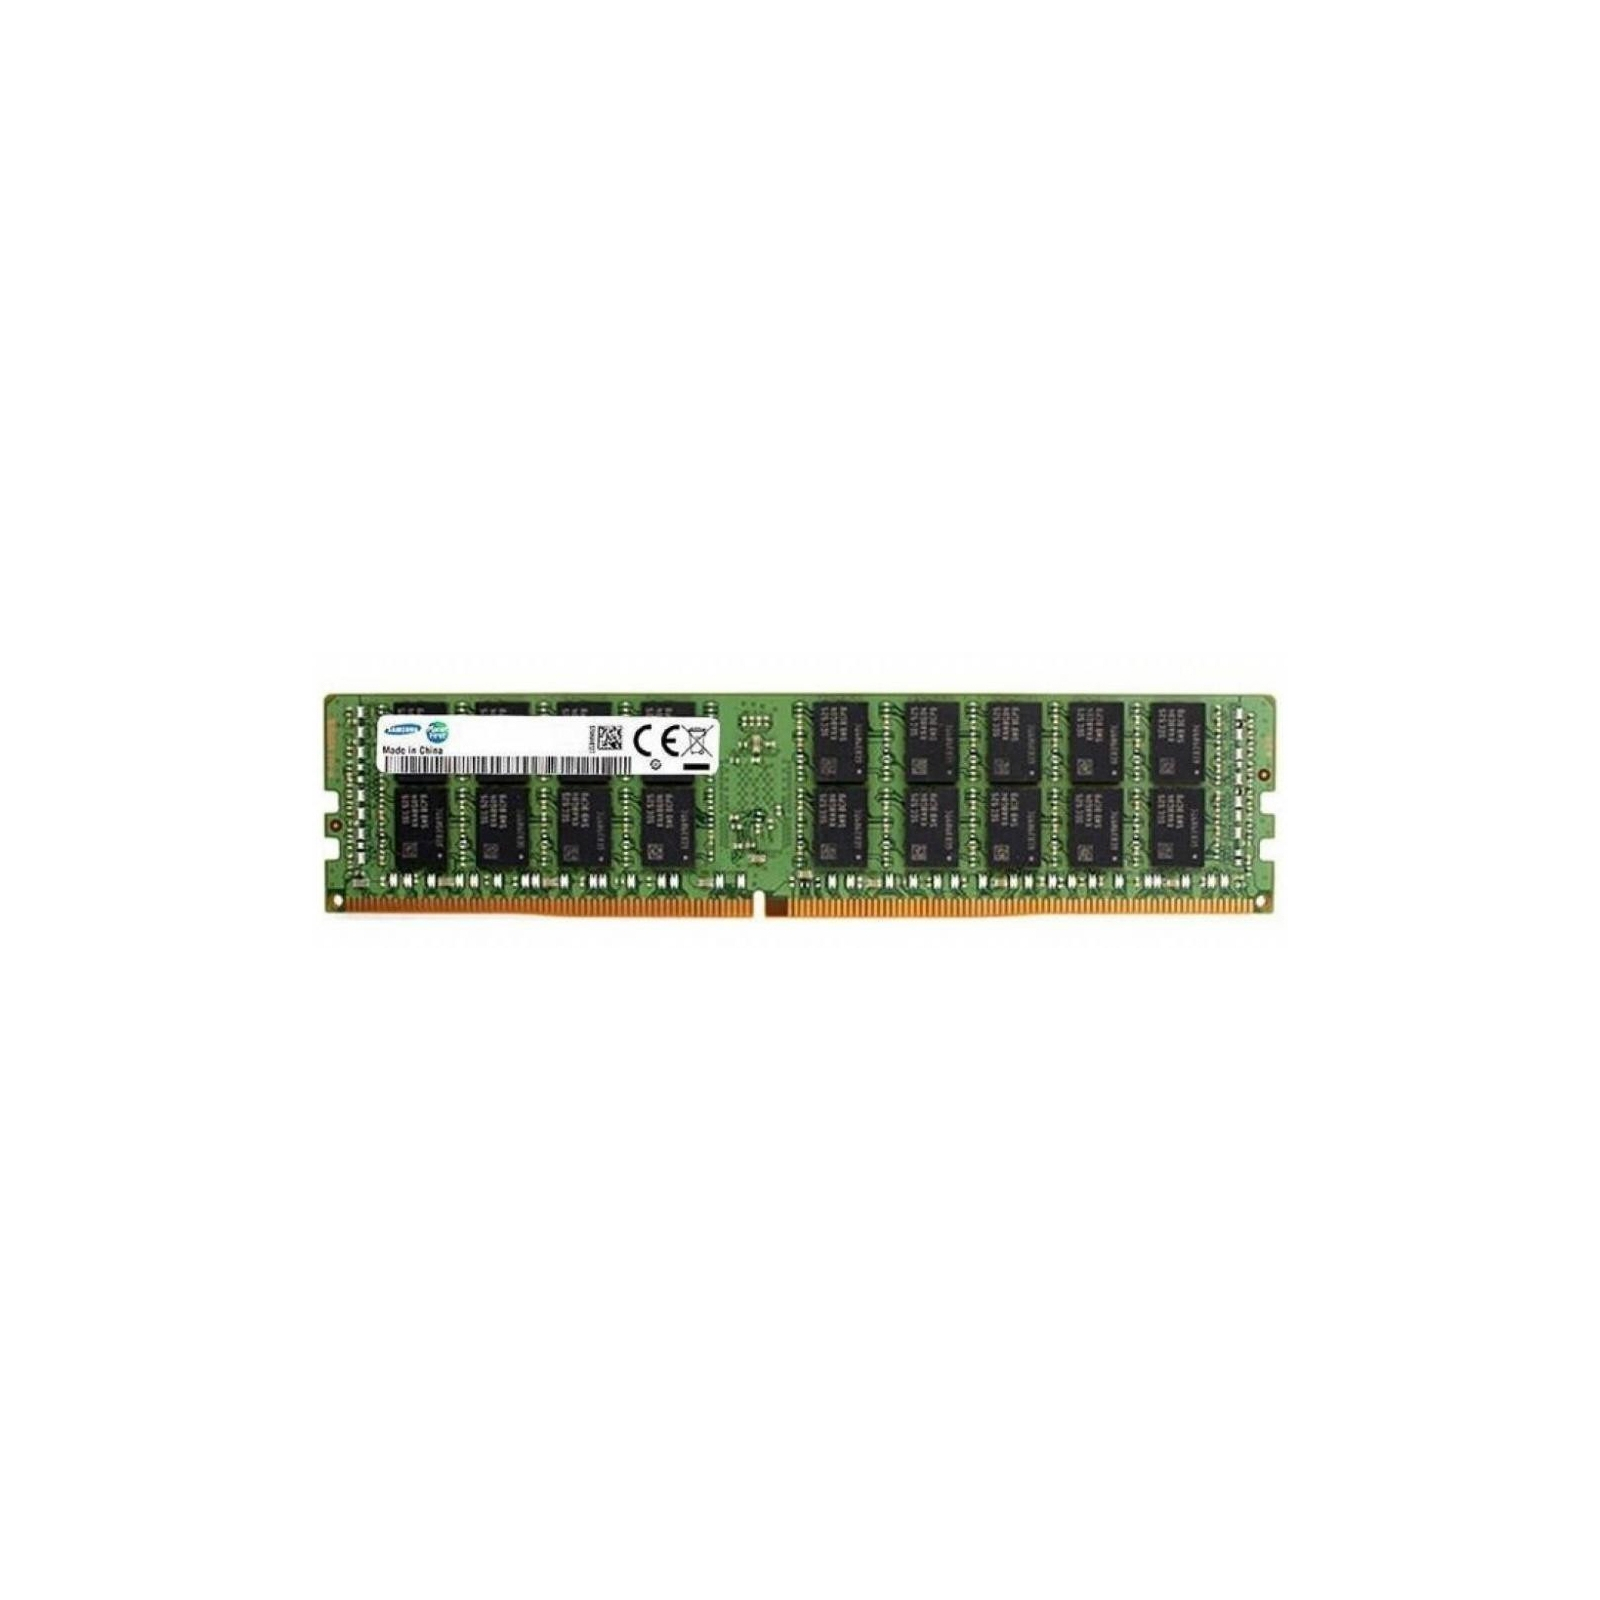 Модуль пам'яті для сервера DDR4 32GB ECC UDIMM 2666MHz 2Rx8 1.2V CL19 Samsung (M391A4G43MB1-CTD)